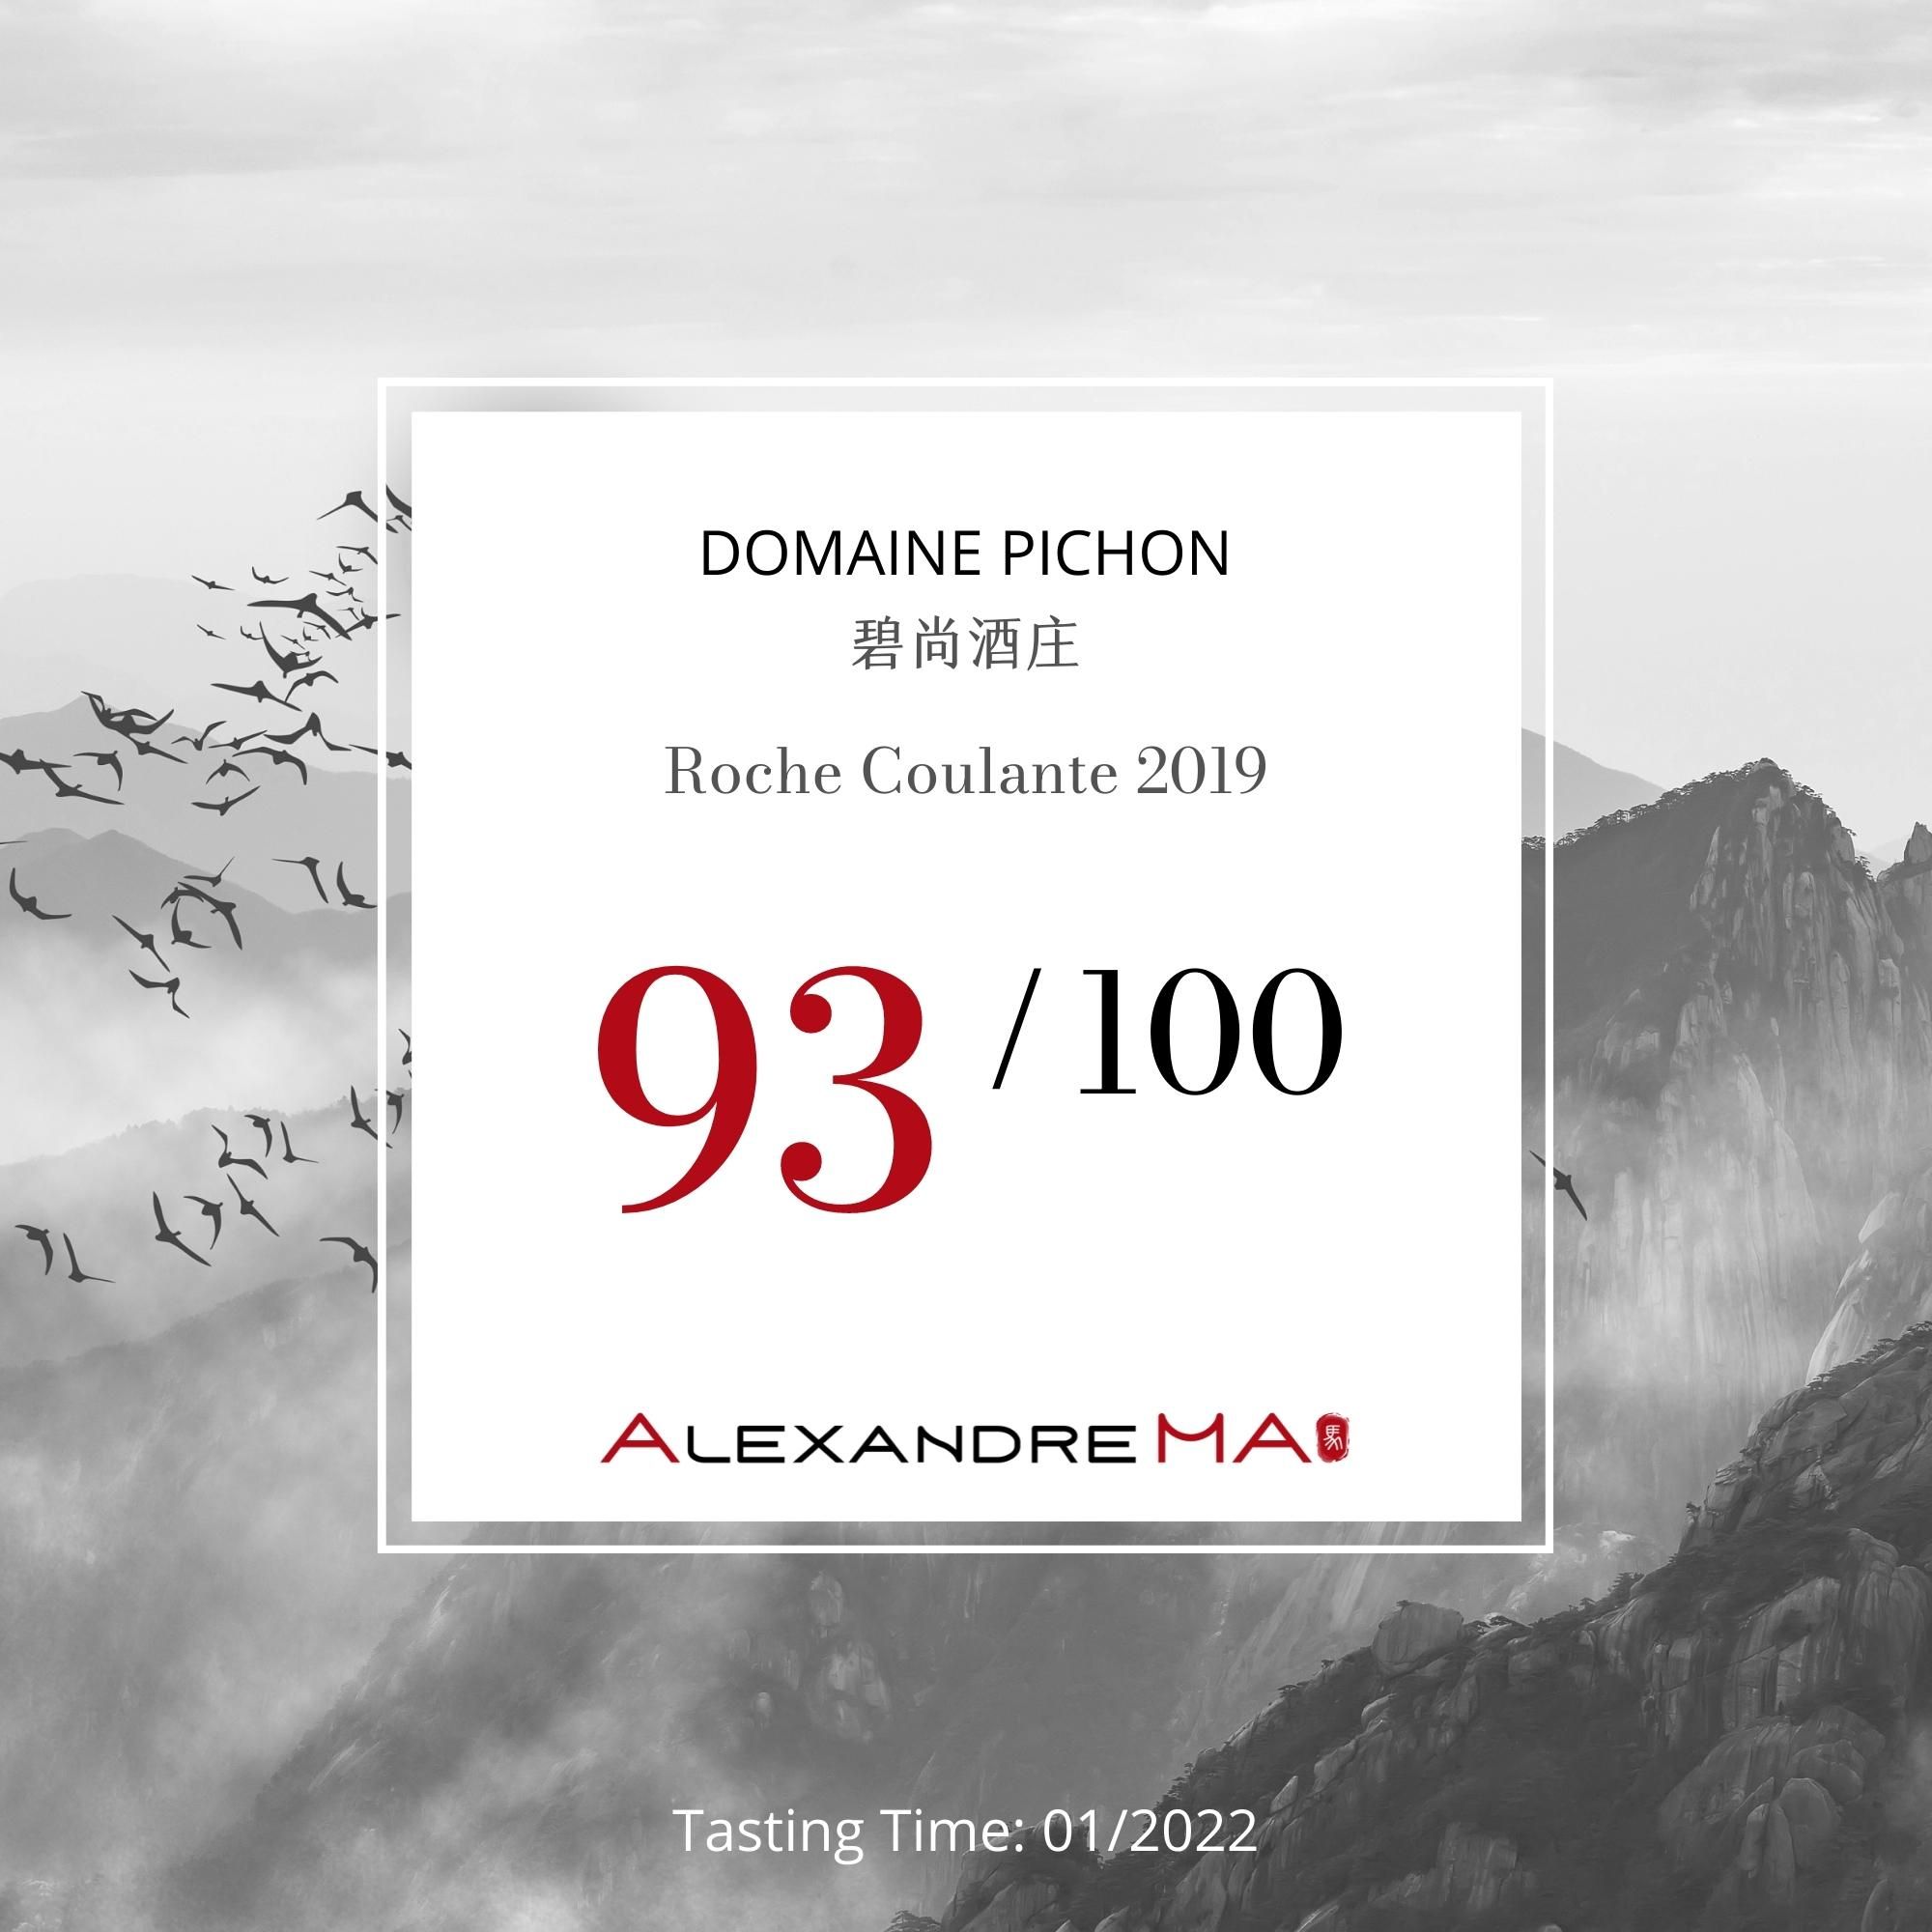 Domaine Pichon 碧尚酒庄-Roche Coulante 2019 - Alexandre Ma